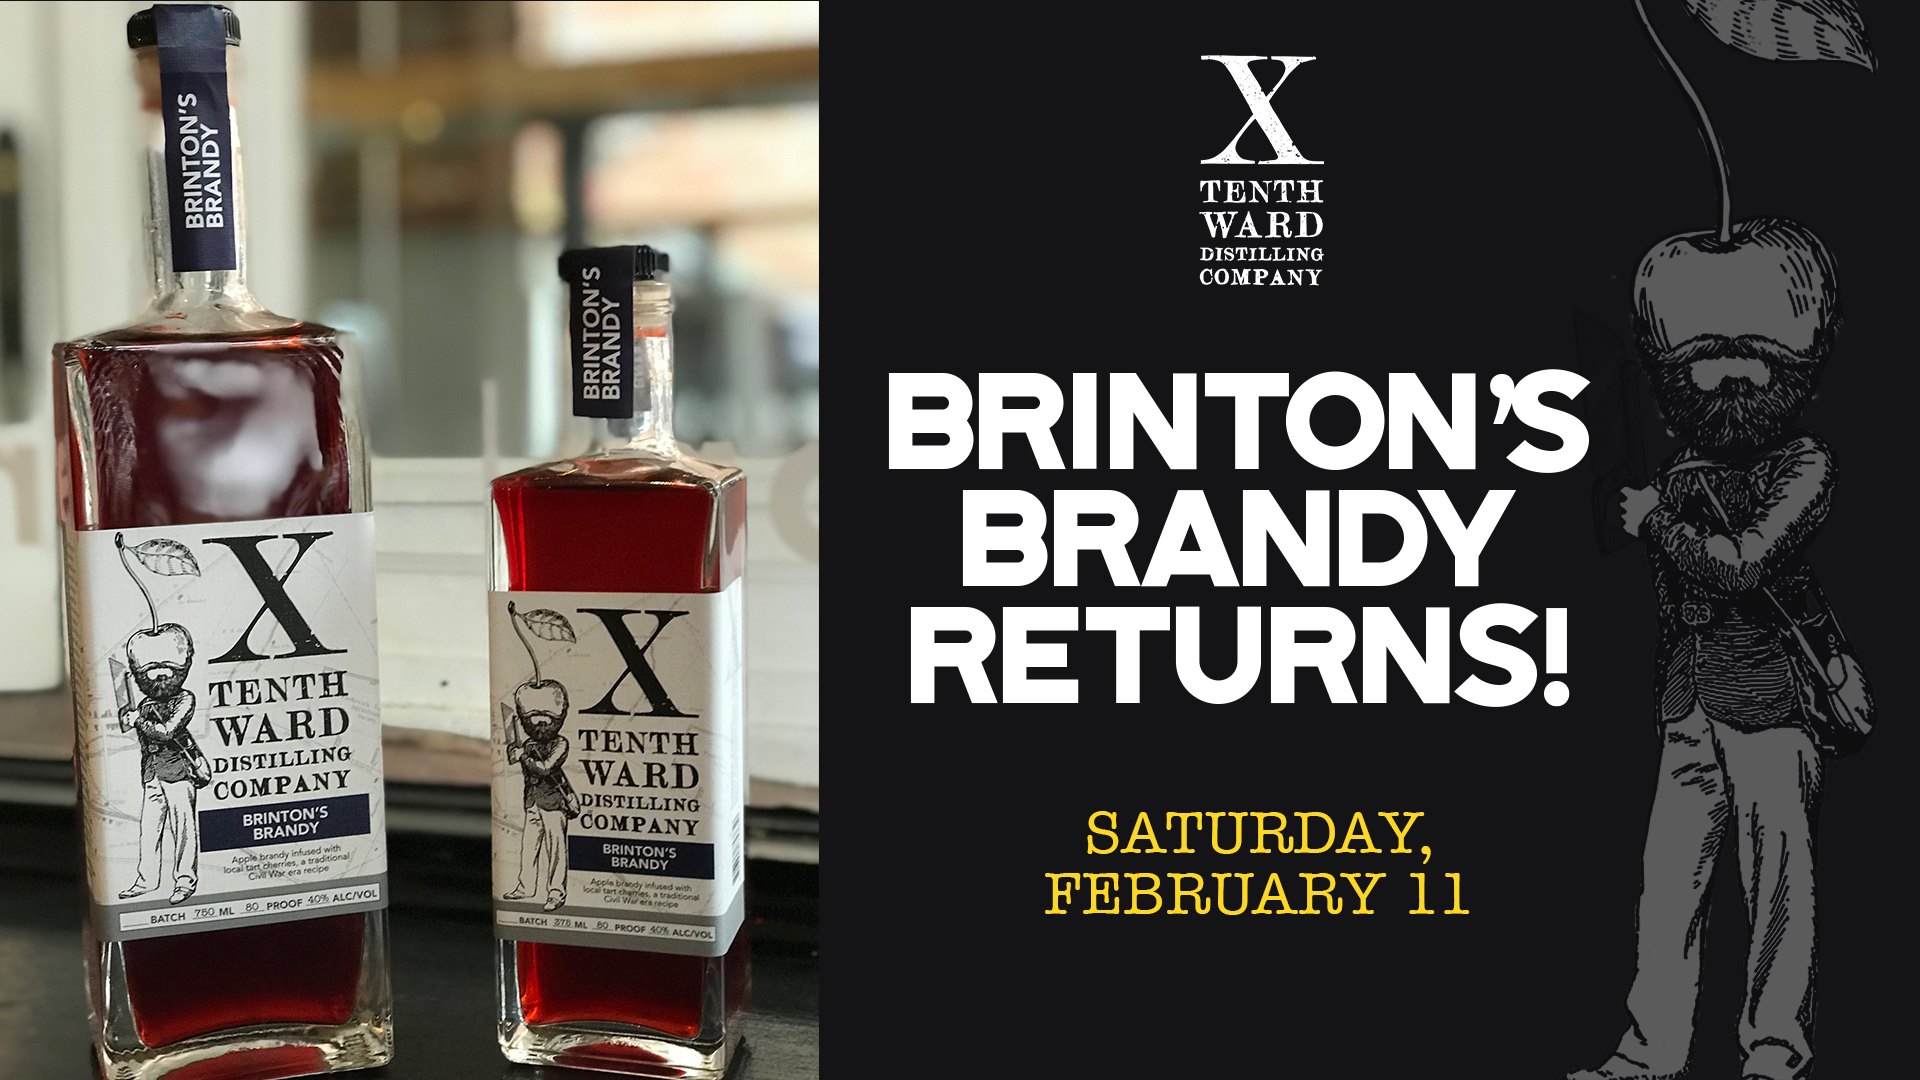 Tenth Ward's Brinton's Brandy